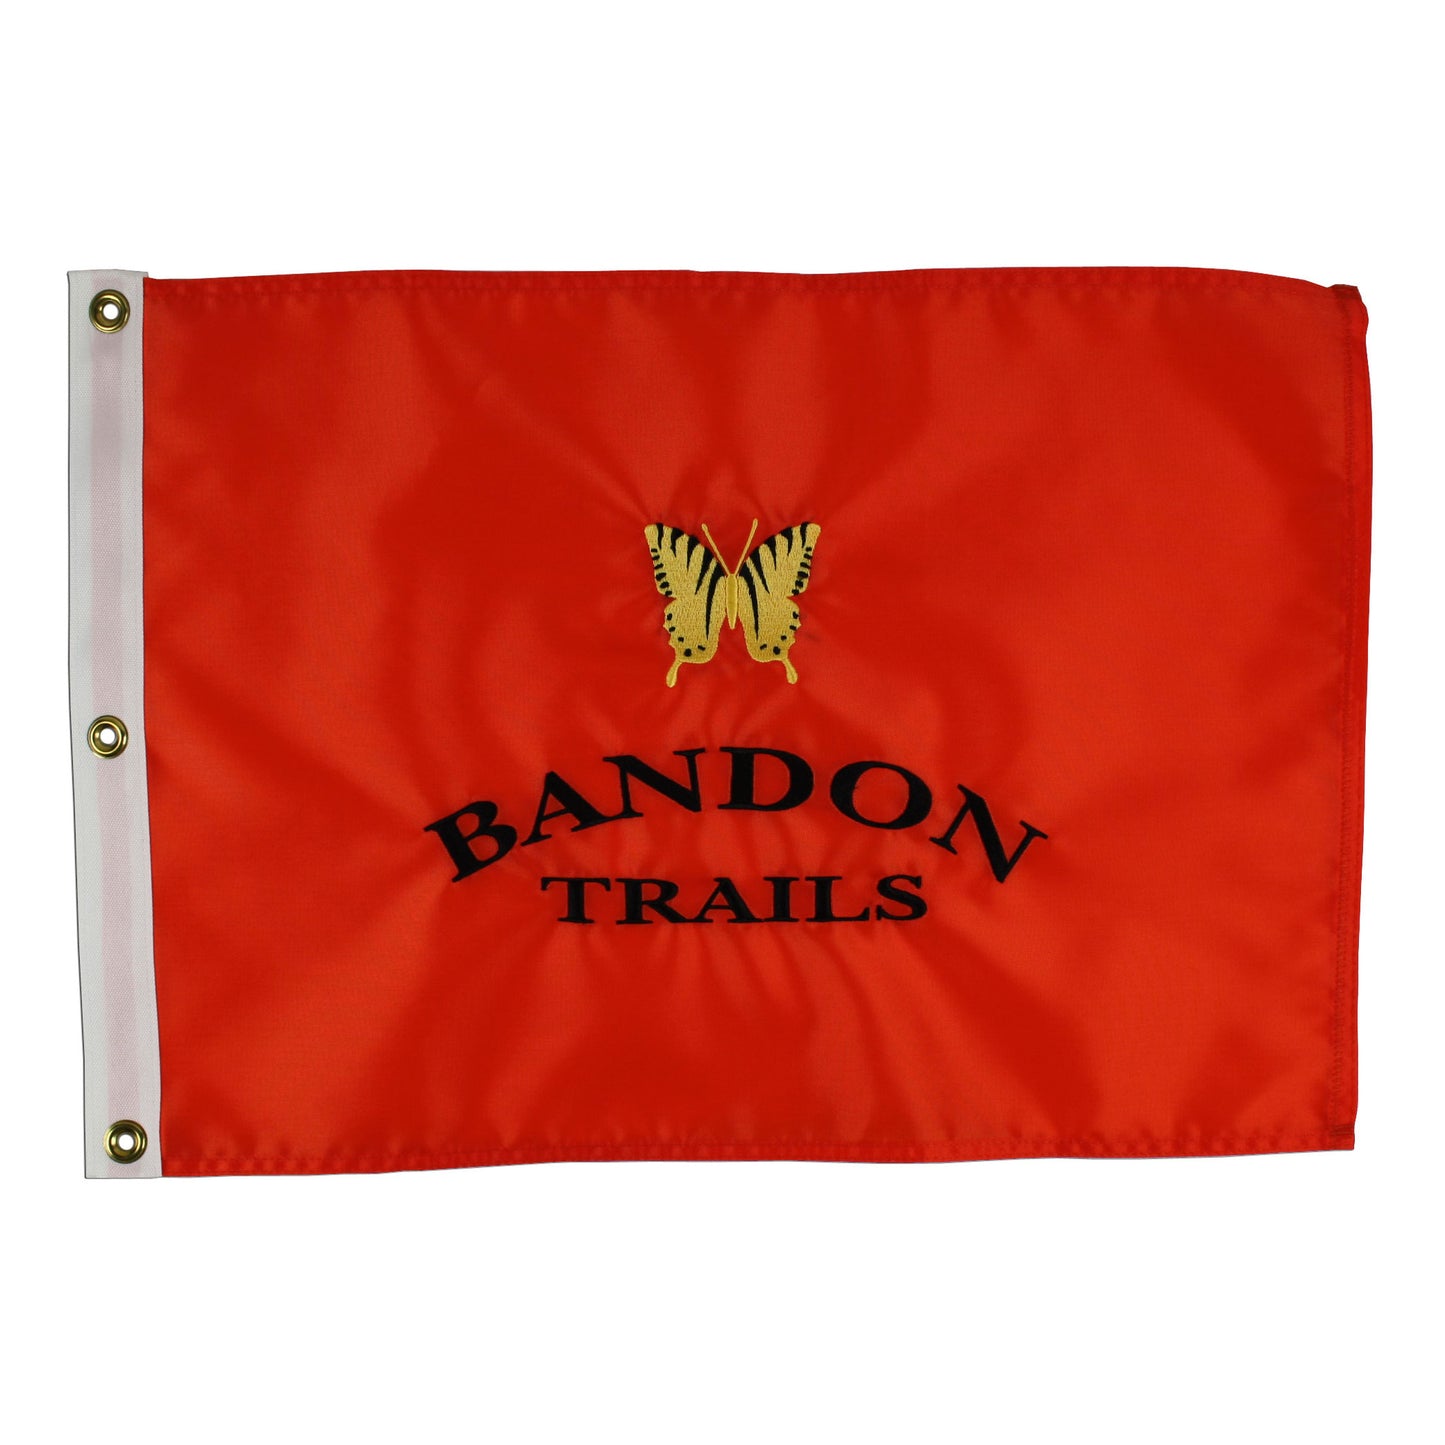 Bandon Trails Course Flag